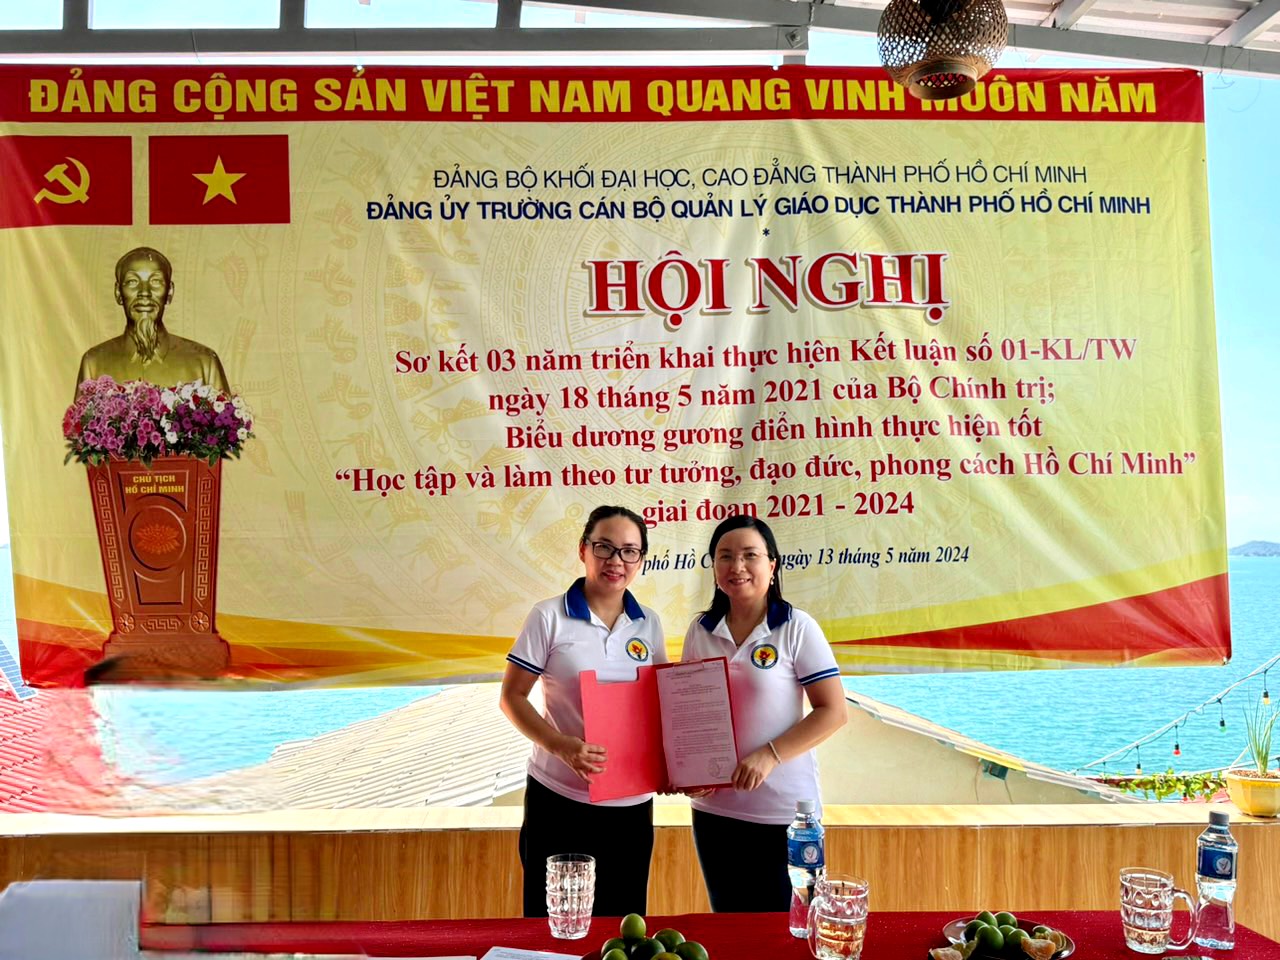 Hình 5 Đồng chí Đinh Thị Thảo Trang trao quyết định cho đồng chí Đinh Thị Kim Loan